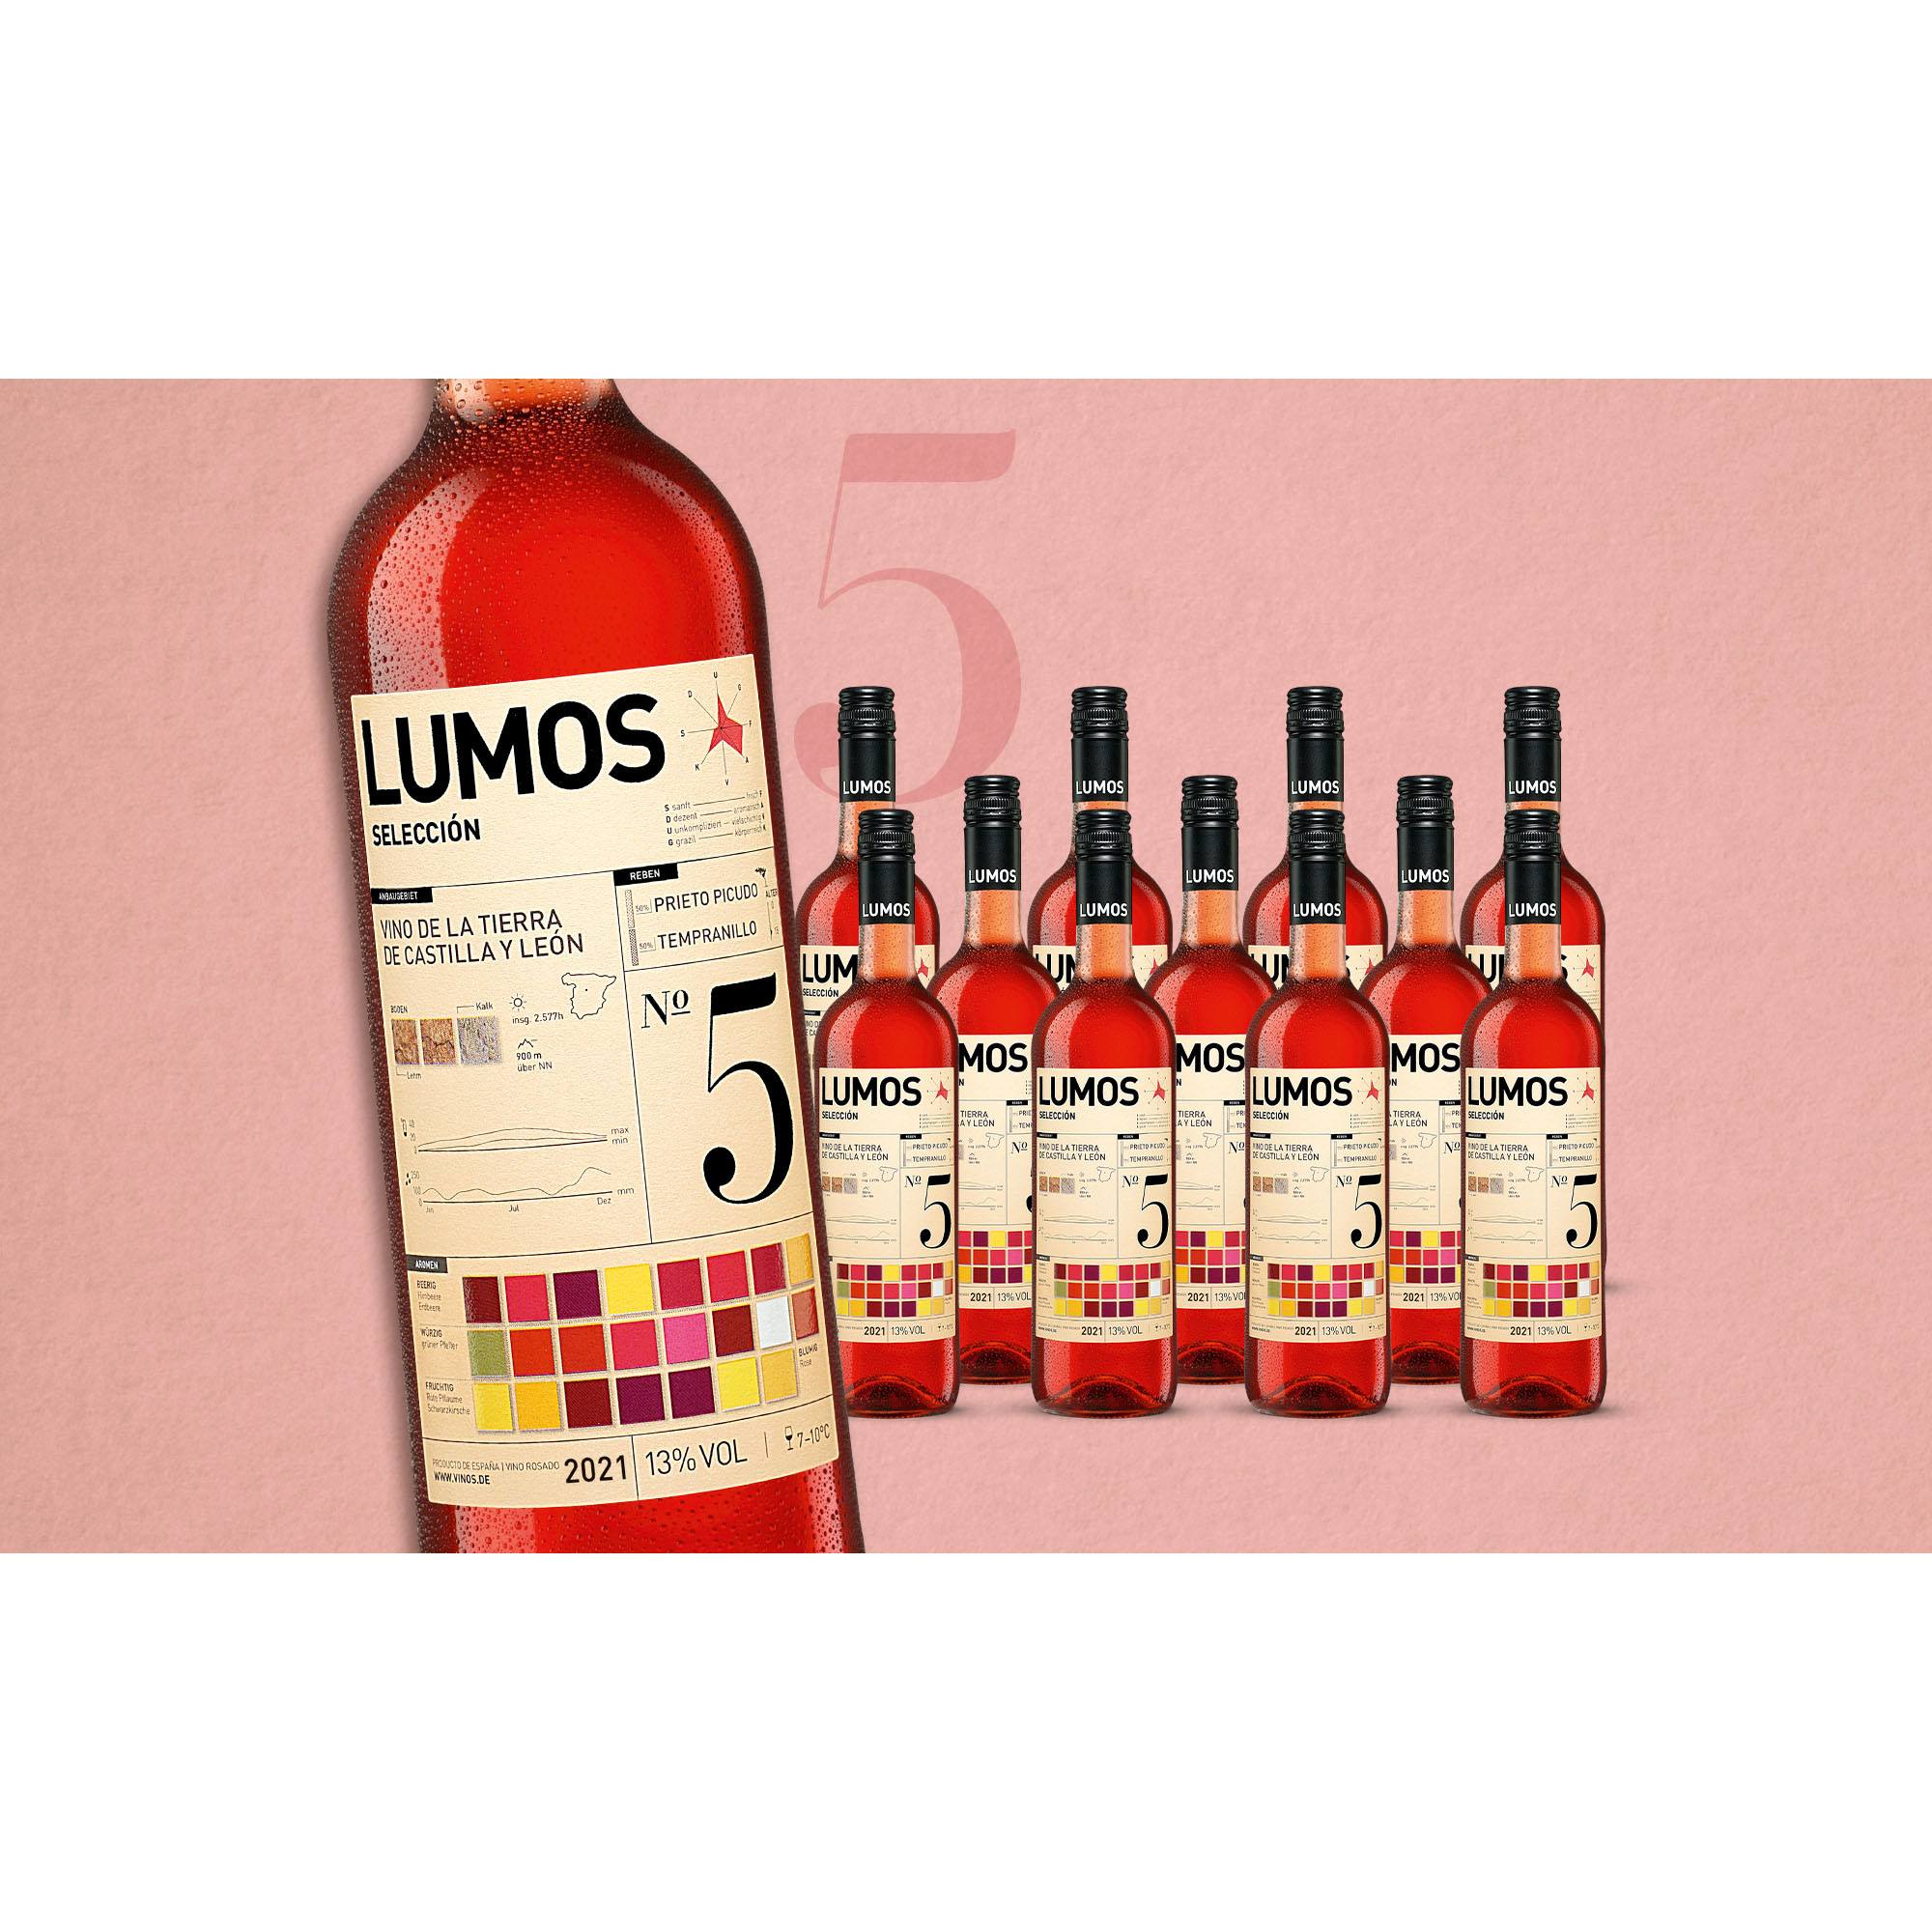 LUMOS No.5 Rosado 2021  9L Trocken Weinpaket aus Spanien 34139 vinos DE